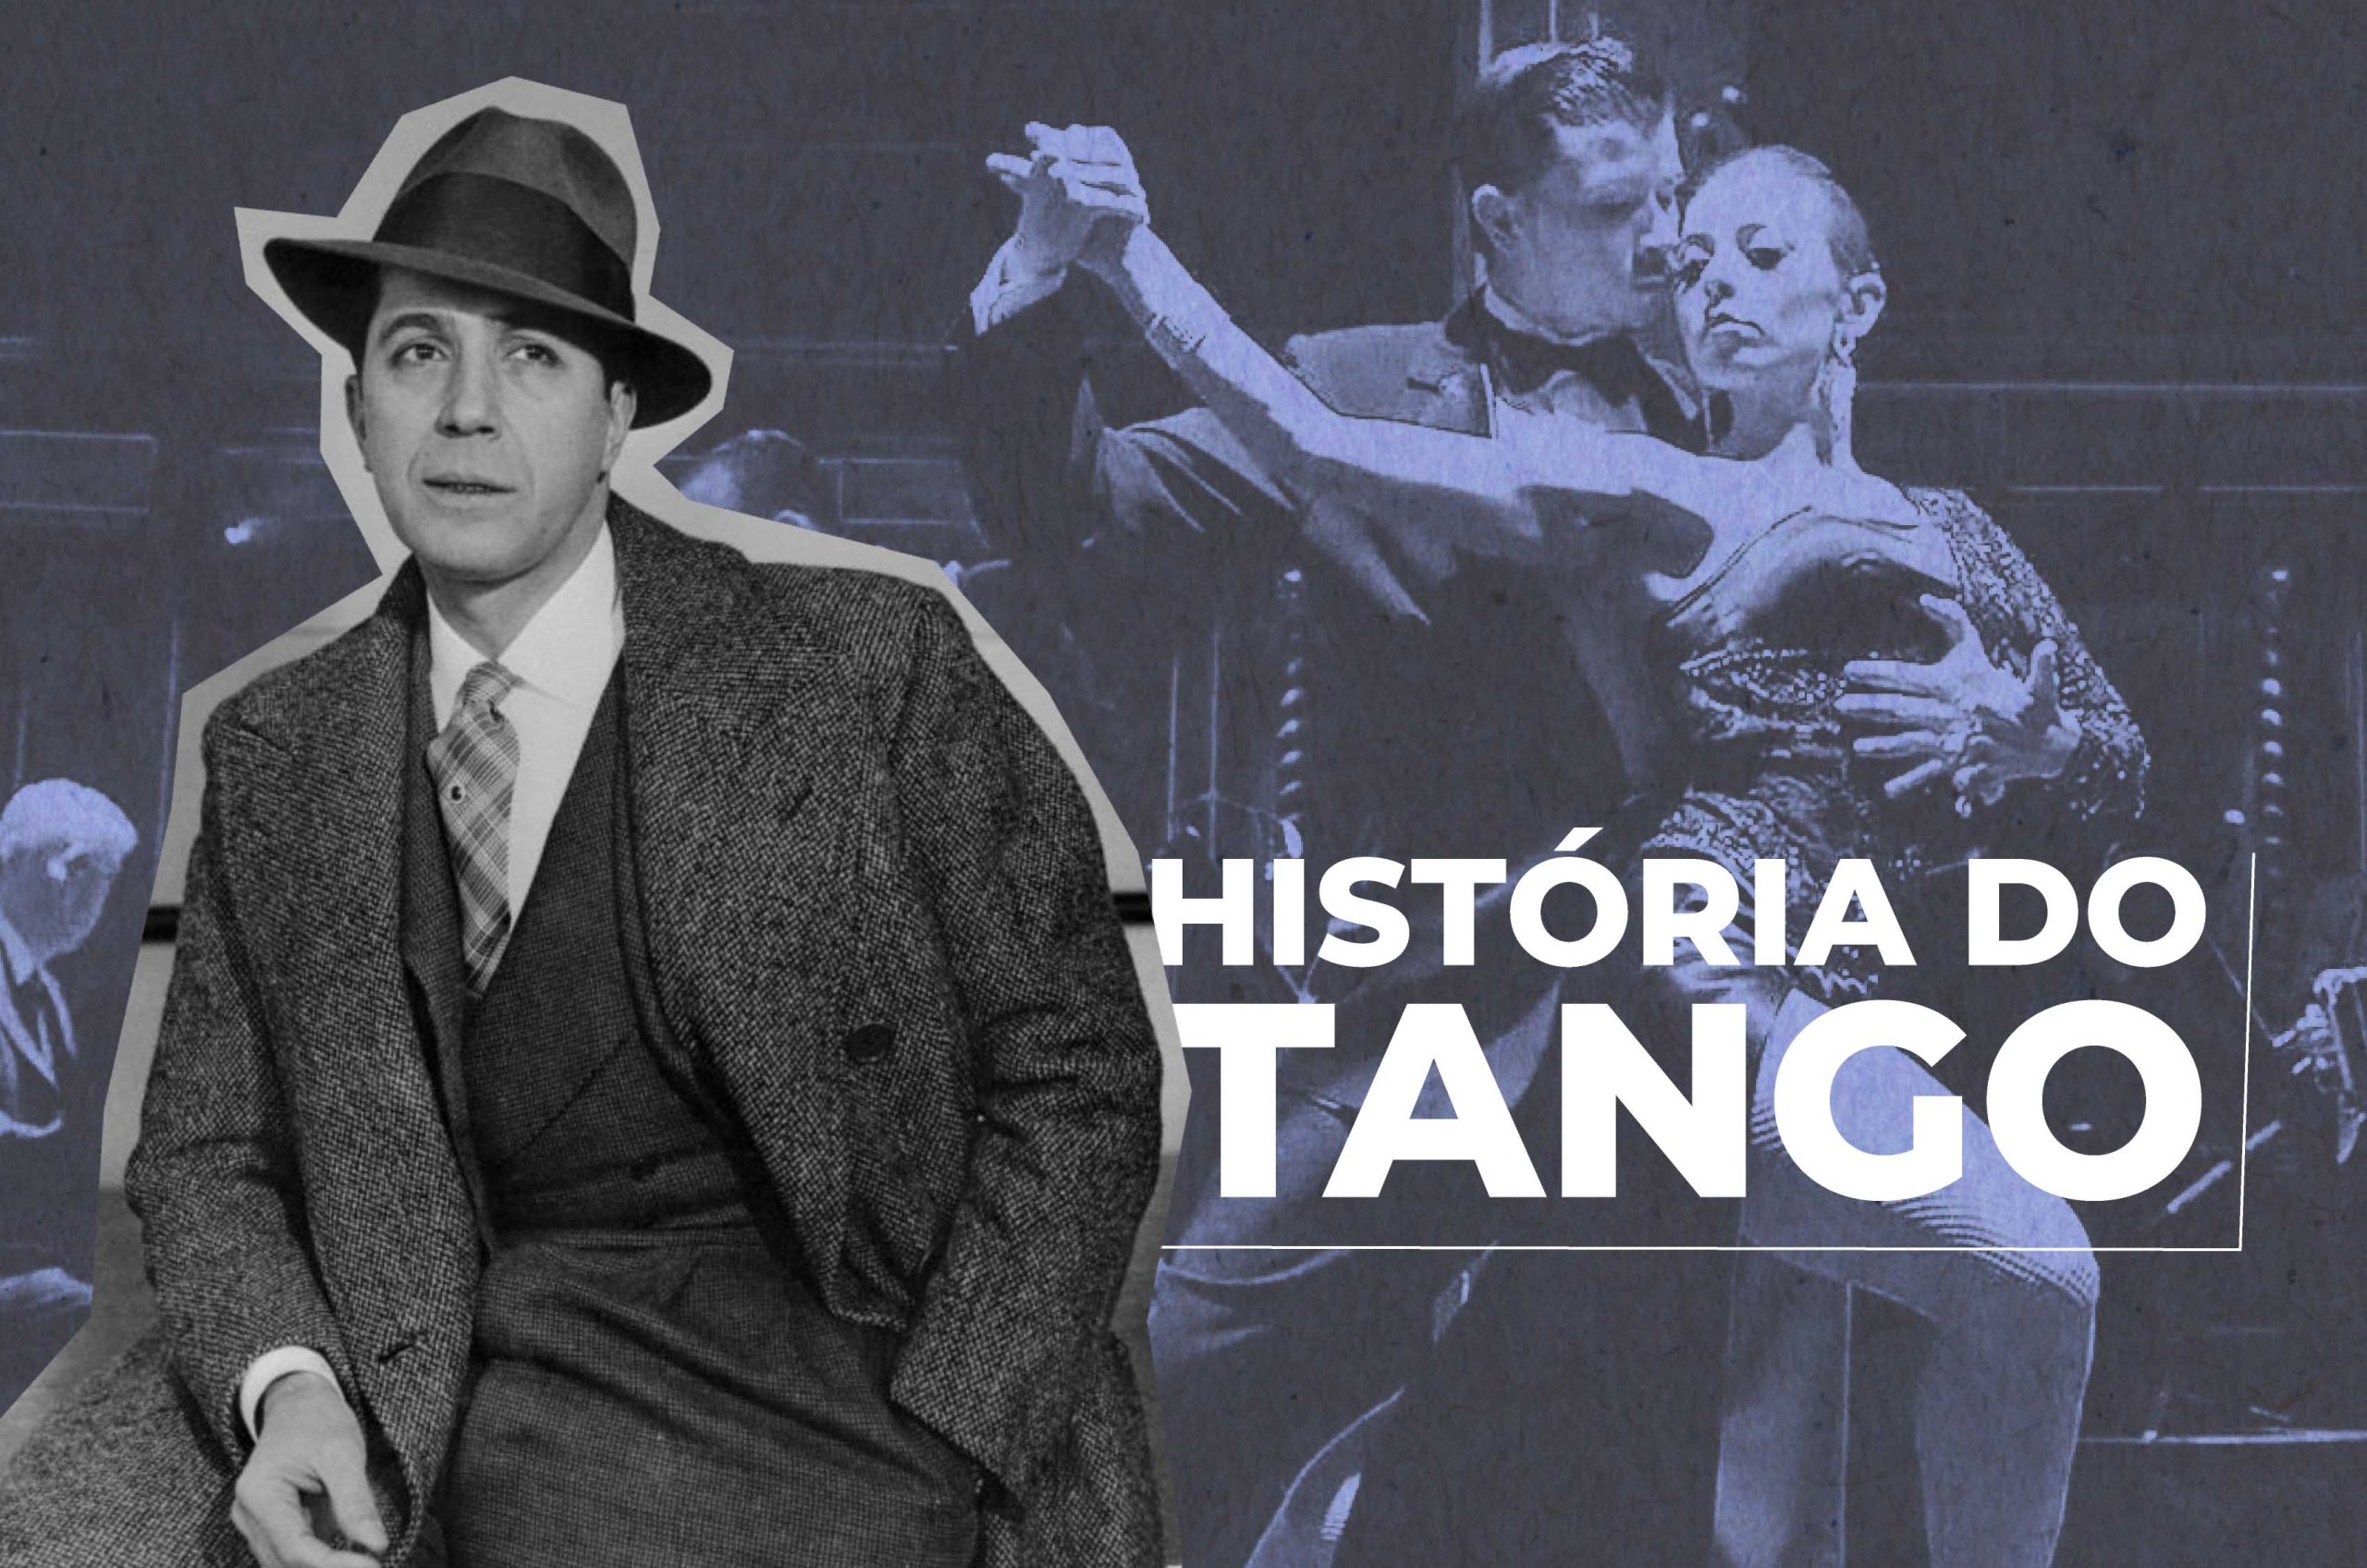 “Corazón, amor y sangre”: a tríade da história do Tango